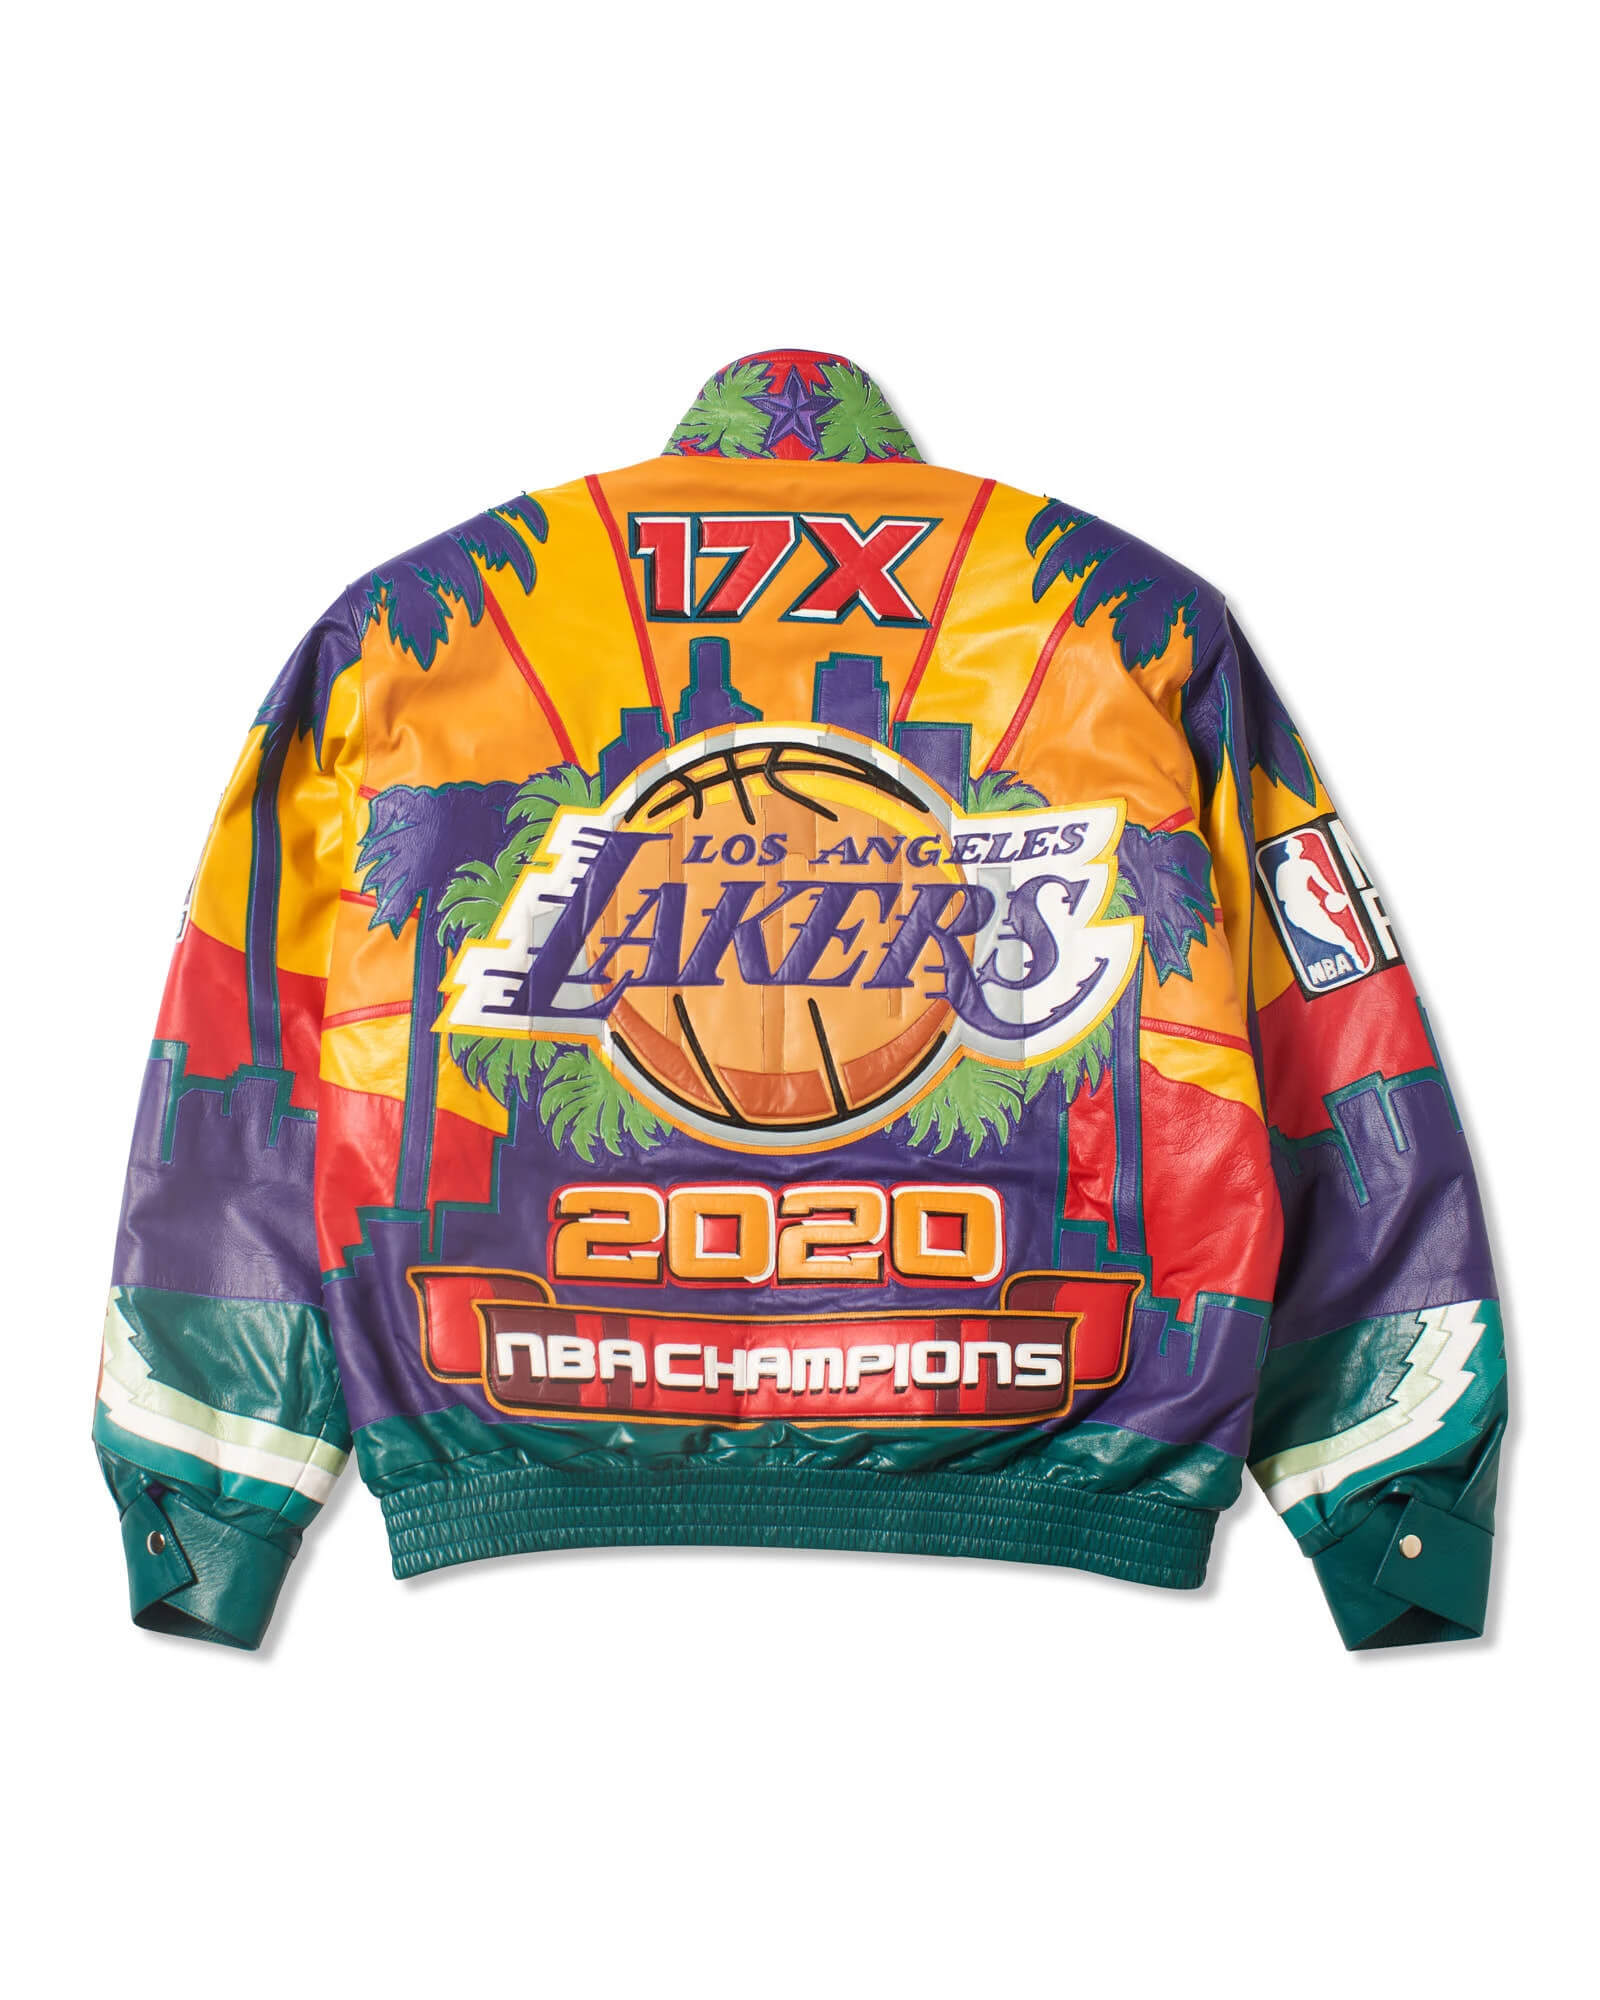 Maker of Jacket NBA Teams Jackets Los Angeles Lakers City Angels Championship